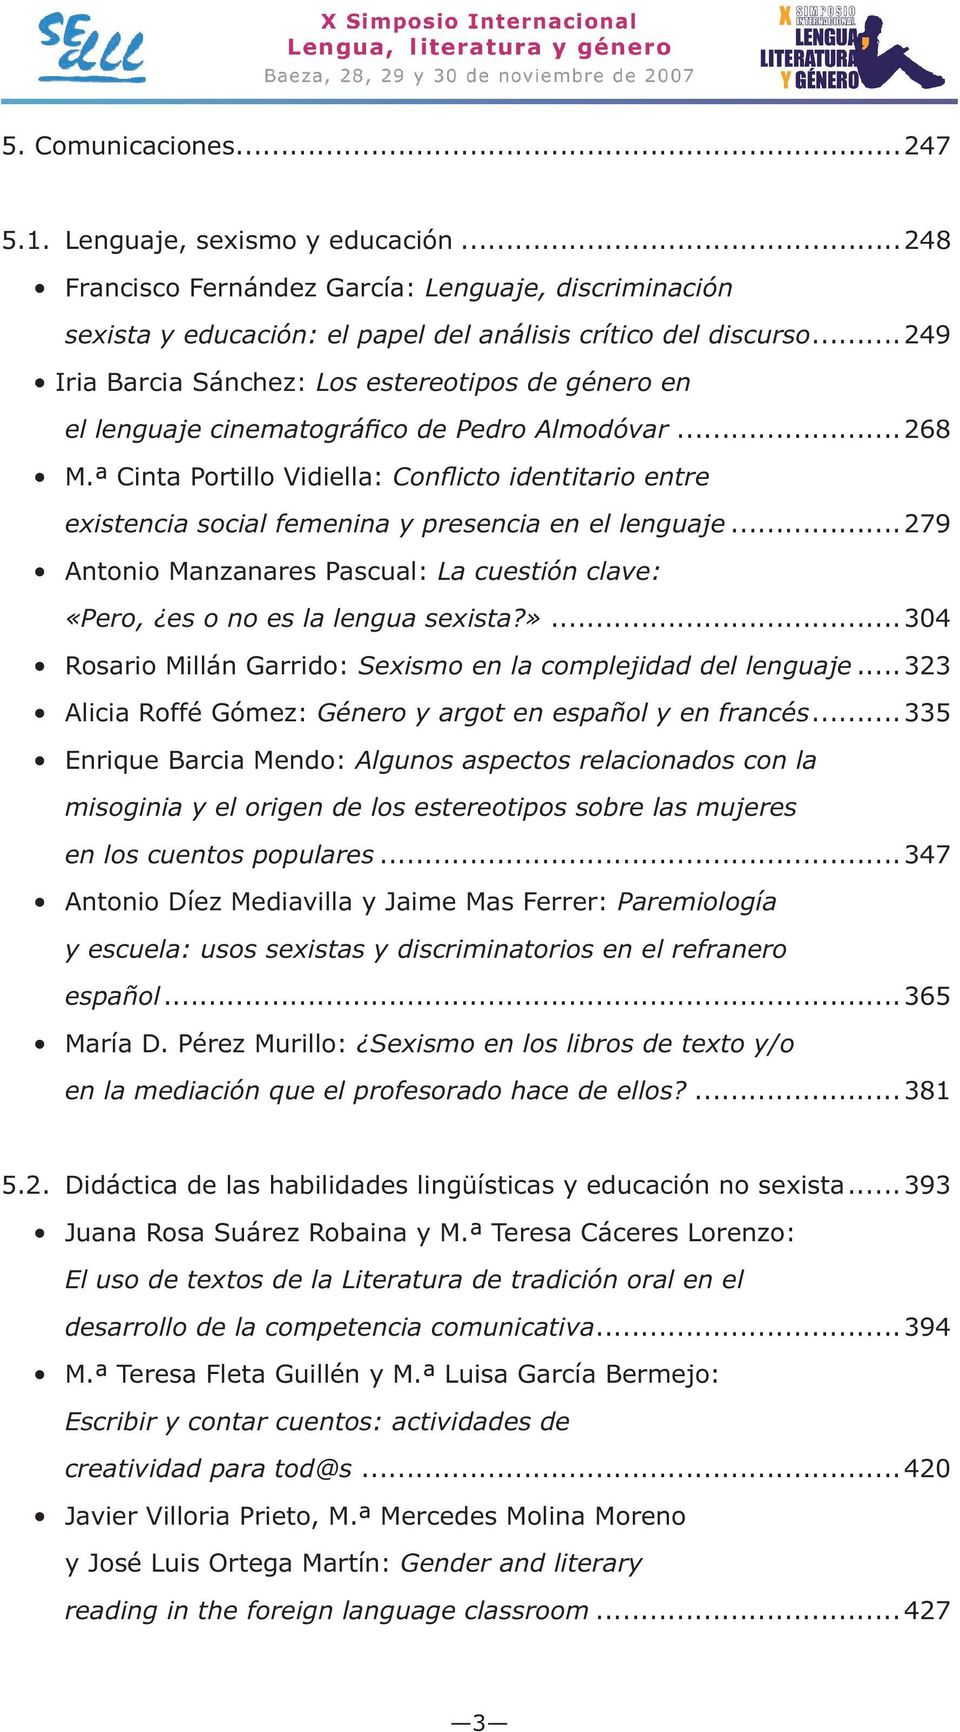 ..323 Género y argot en español y en francés...335 misoginia y el origen de los estereotipos sobre las mujeres en los cuentos populares.